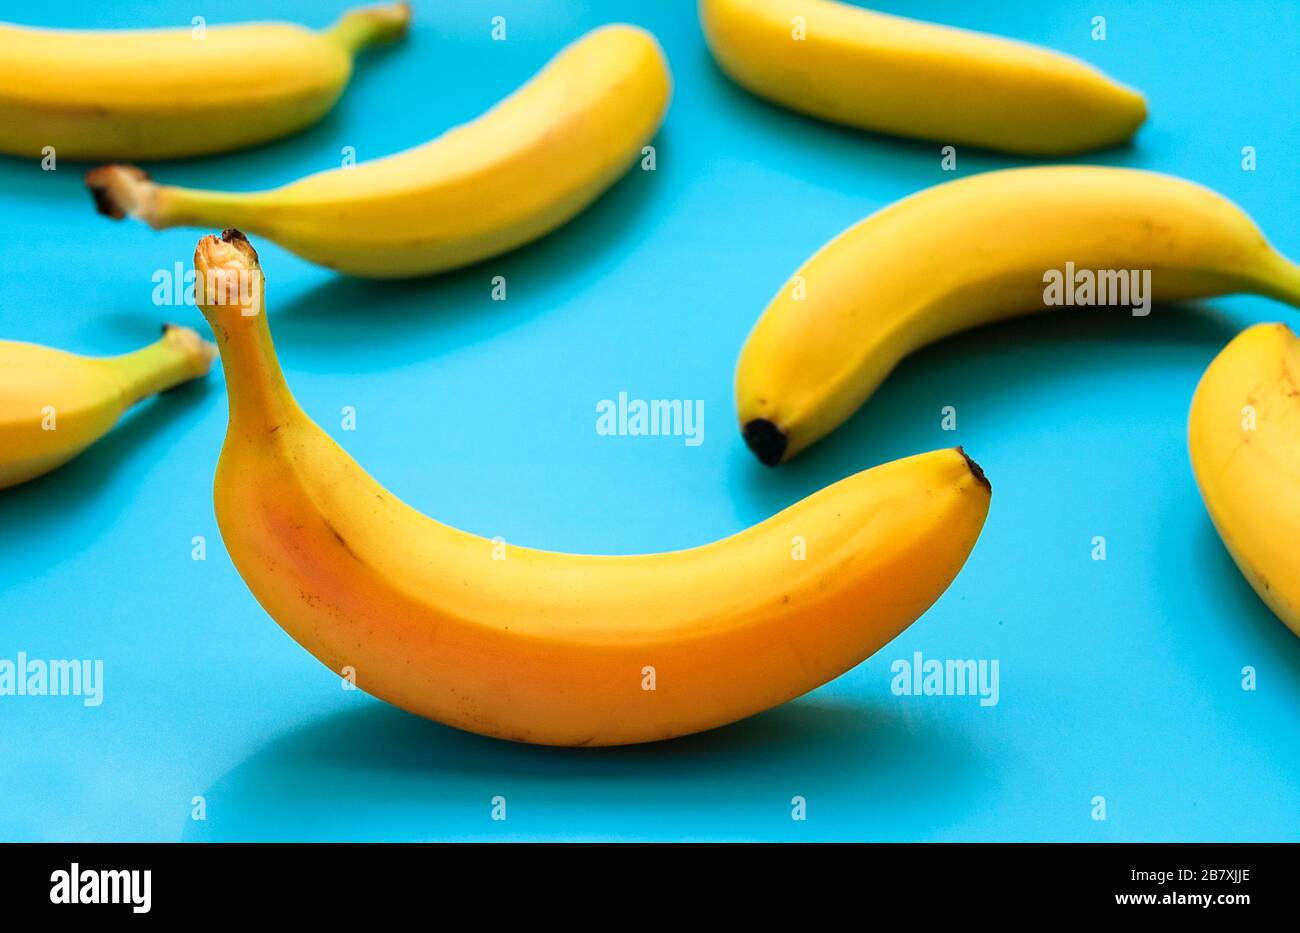 Viele gelbe Bananen auf blauem Grund. Stockfoto